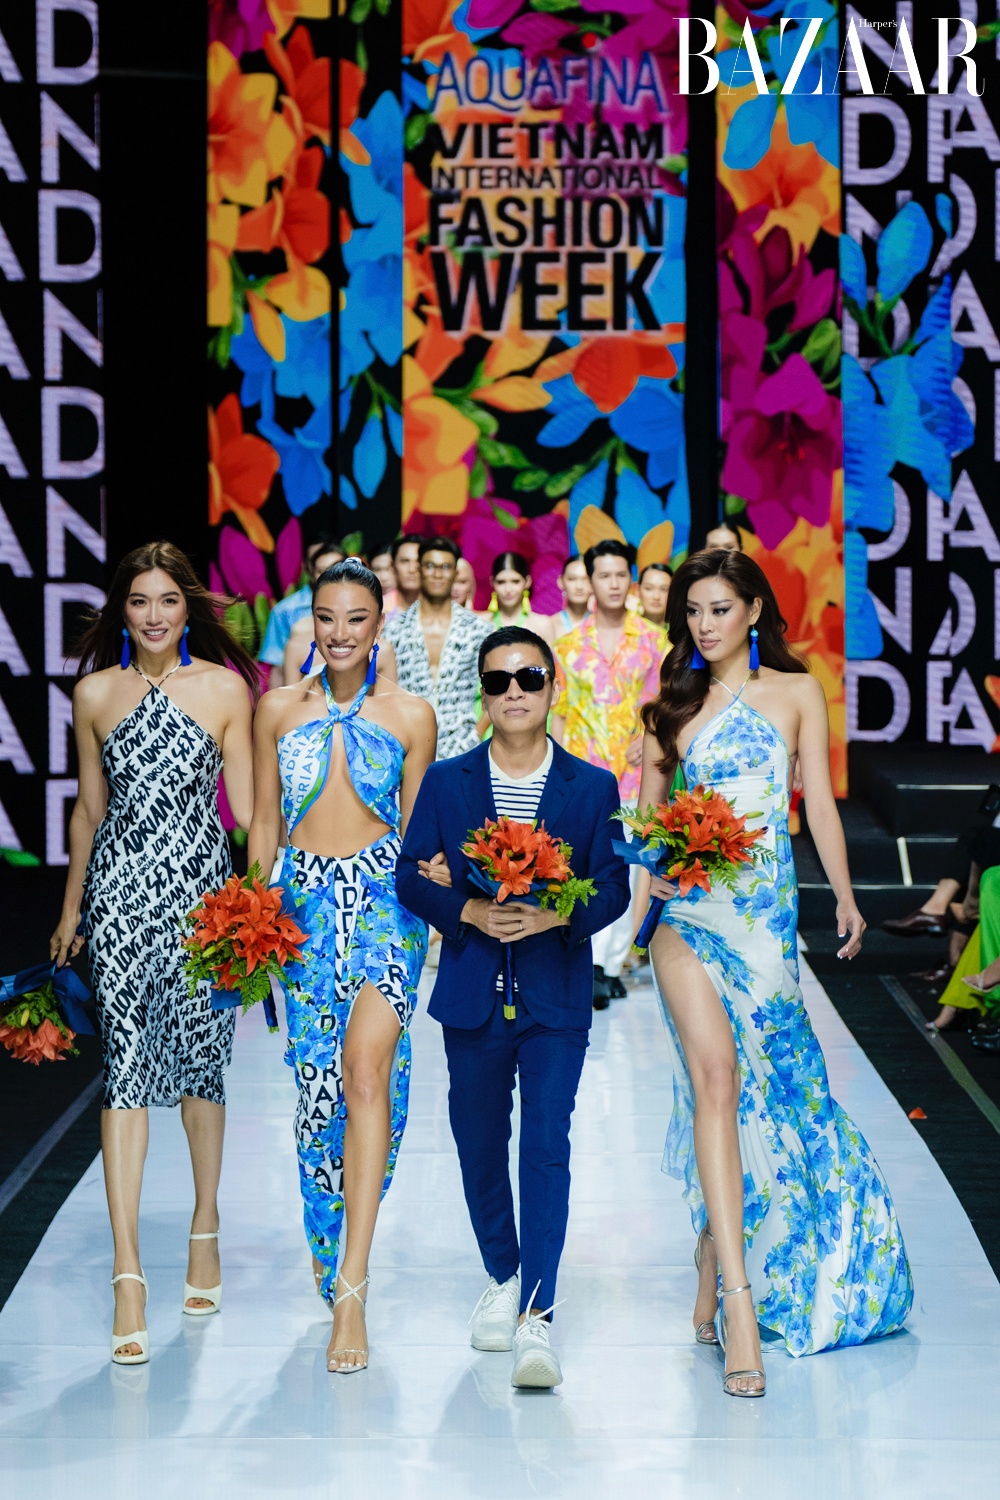 Adrian Anh Tuấn cùng các người mẫu đồng thời là bạn thân thiết: Lệ Hằng, Á hậu Kim Duyên, hoa hậu Khánh Vân (từ trái sang)